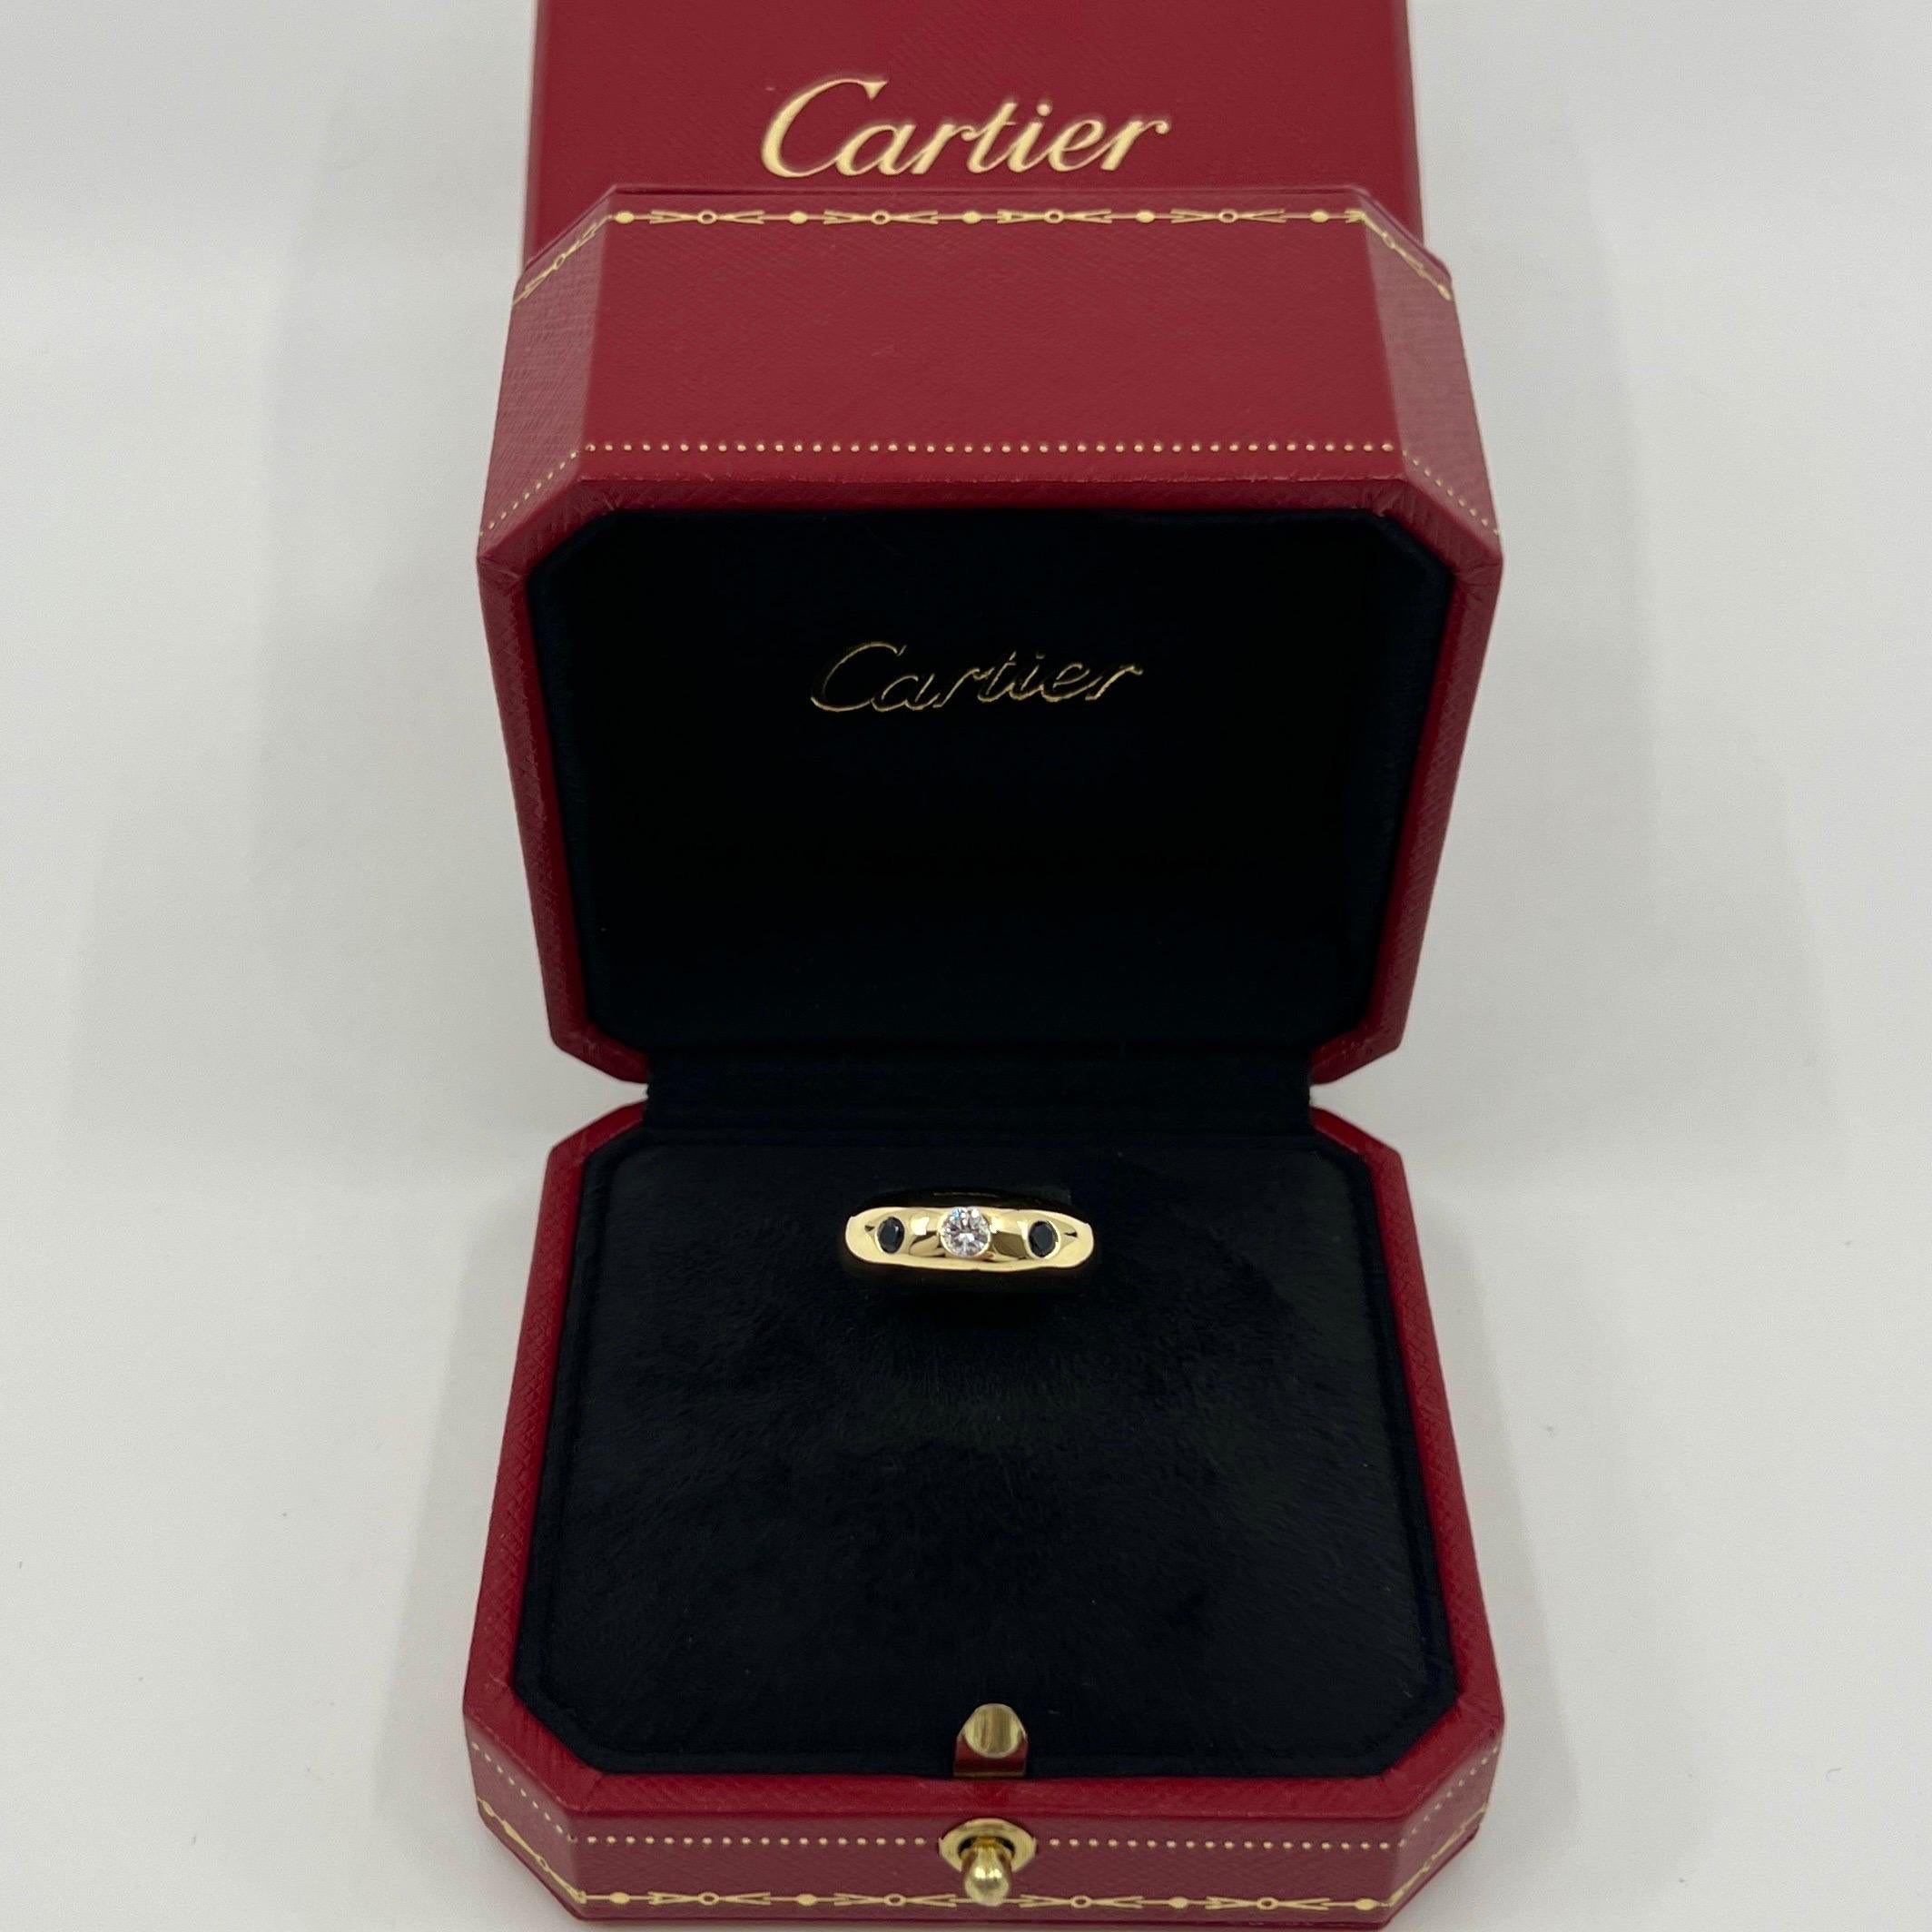 Vintage Cartier Diamond And Blue Sapphire 18k Yellow Gold Three Stone Dome Ring.

Superbe bague Cartier en or jaune sertie d'un magnifique diamant central de 3,5 mm de couleur F/G et de pureté VVS. Il est rehaussé de deux saphirs bleus profonds